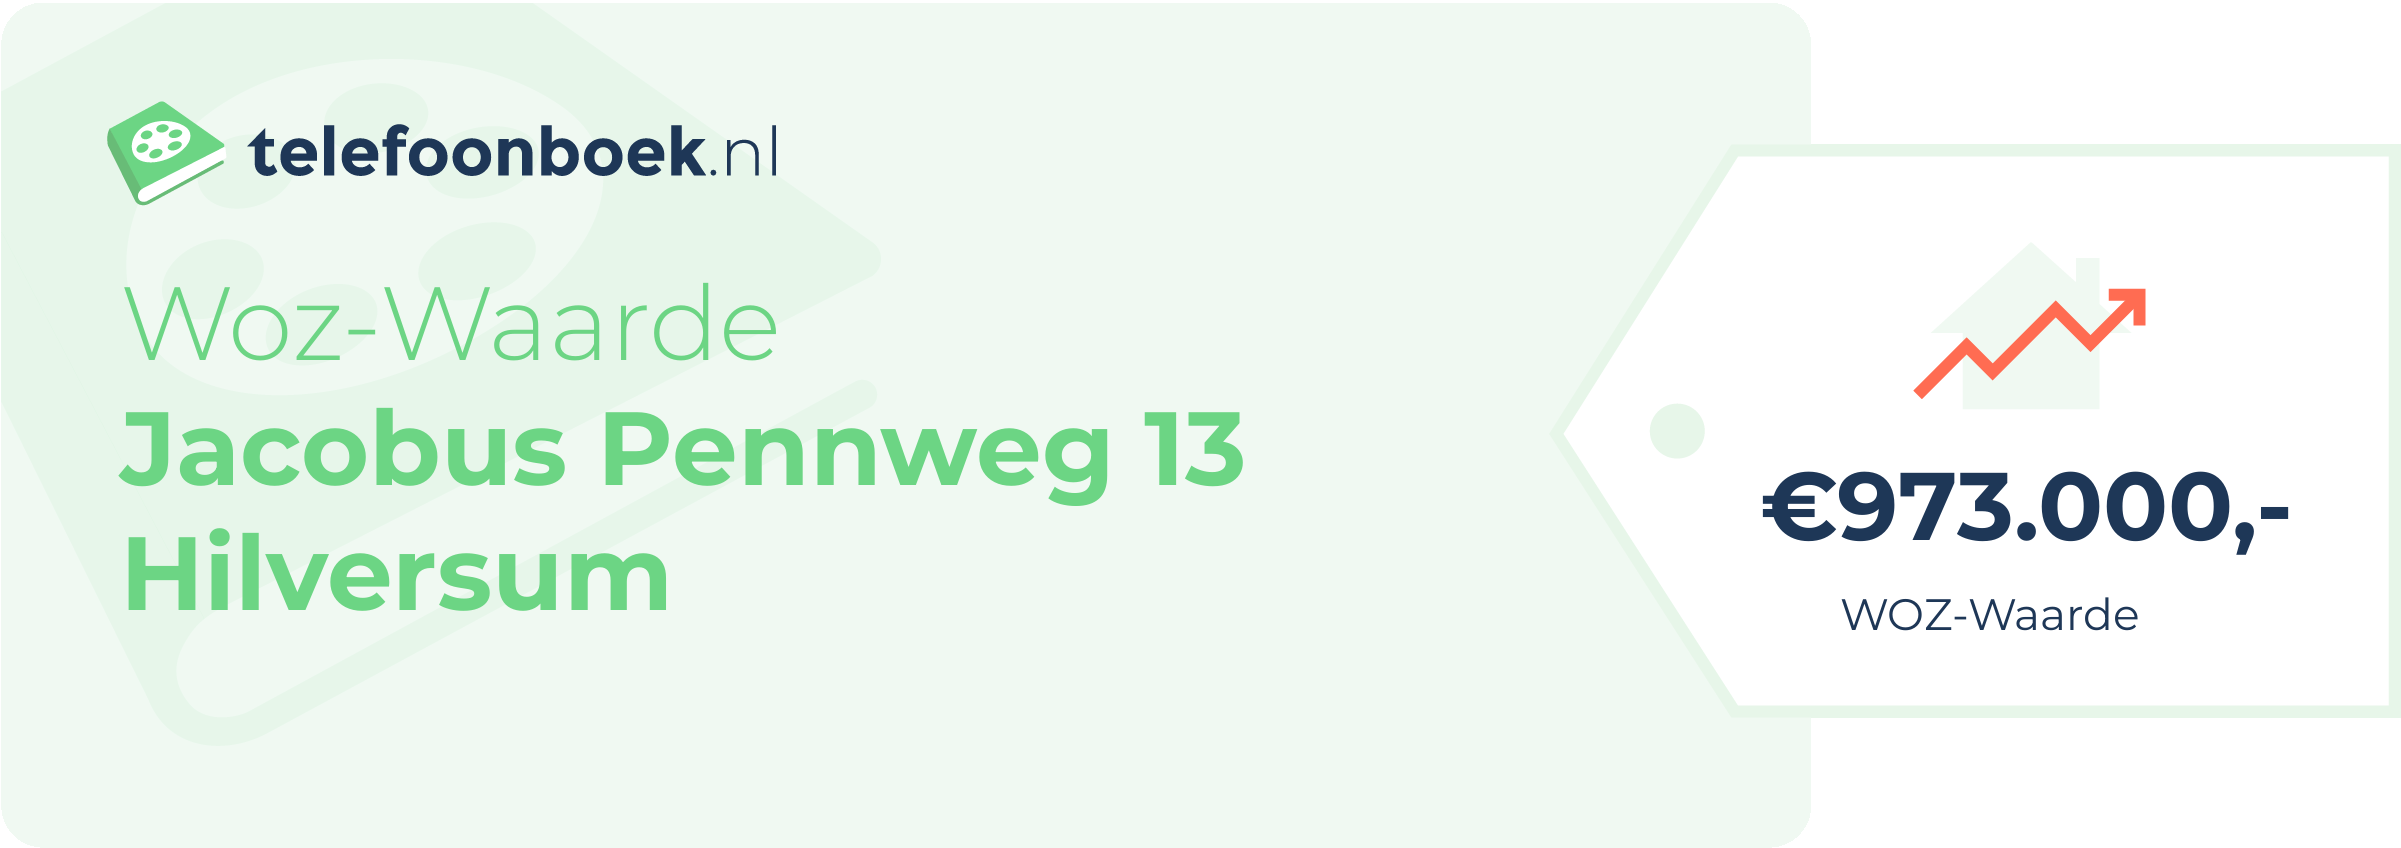 WOZ-waarde Jacobus Pennweg 13 Hilversum